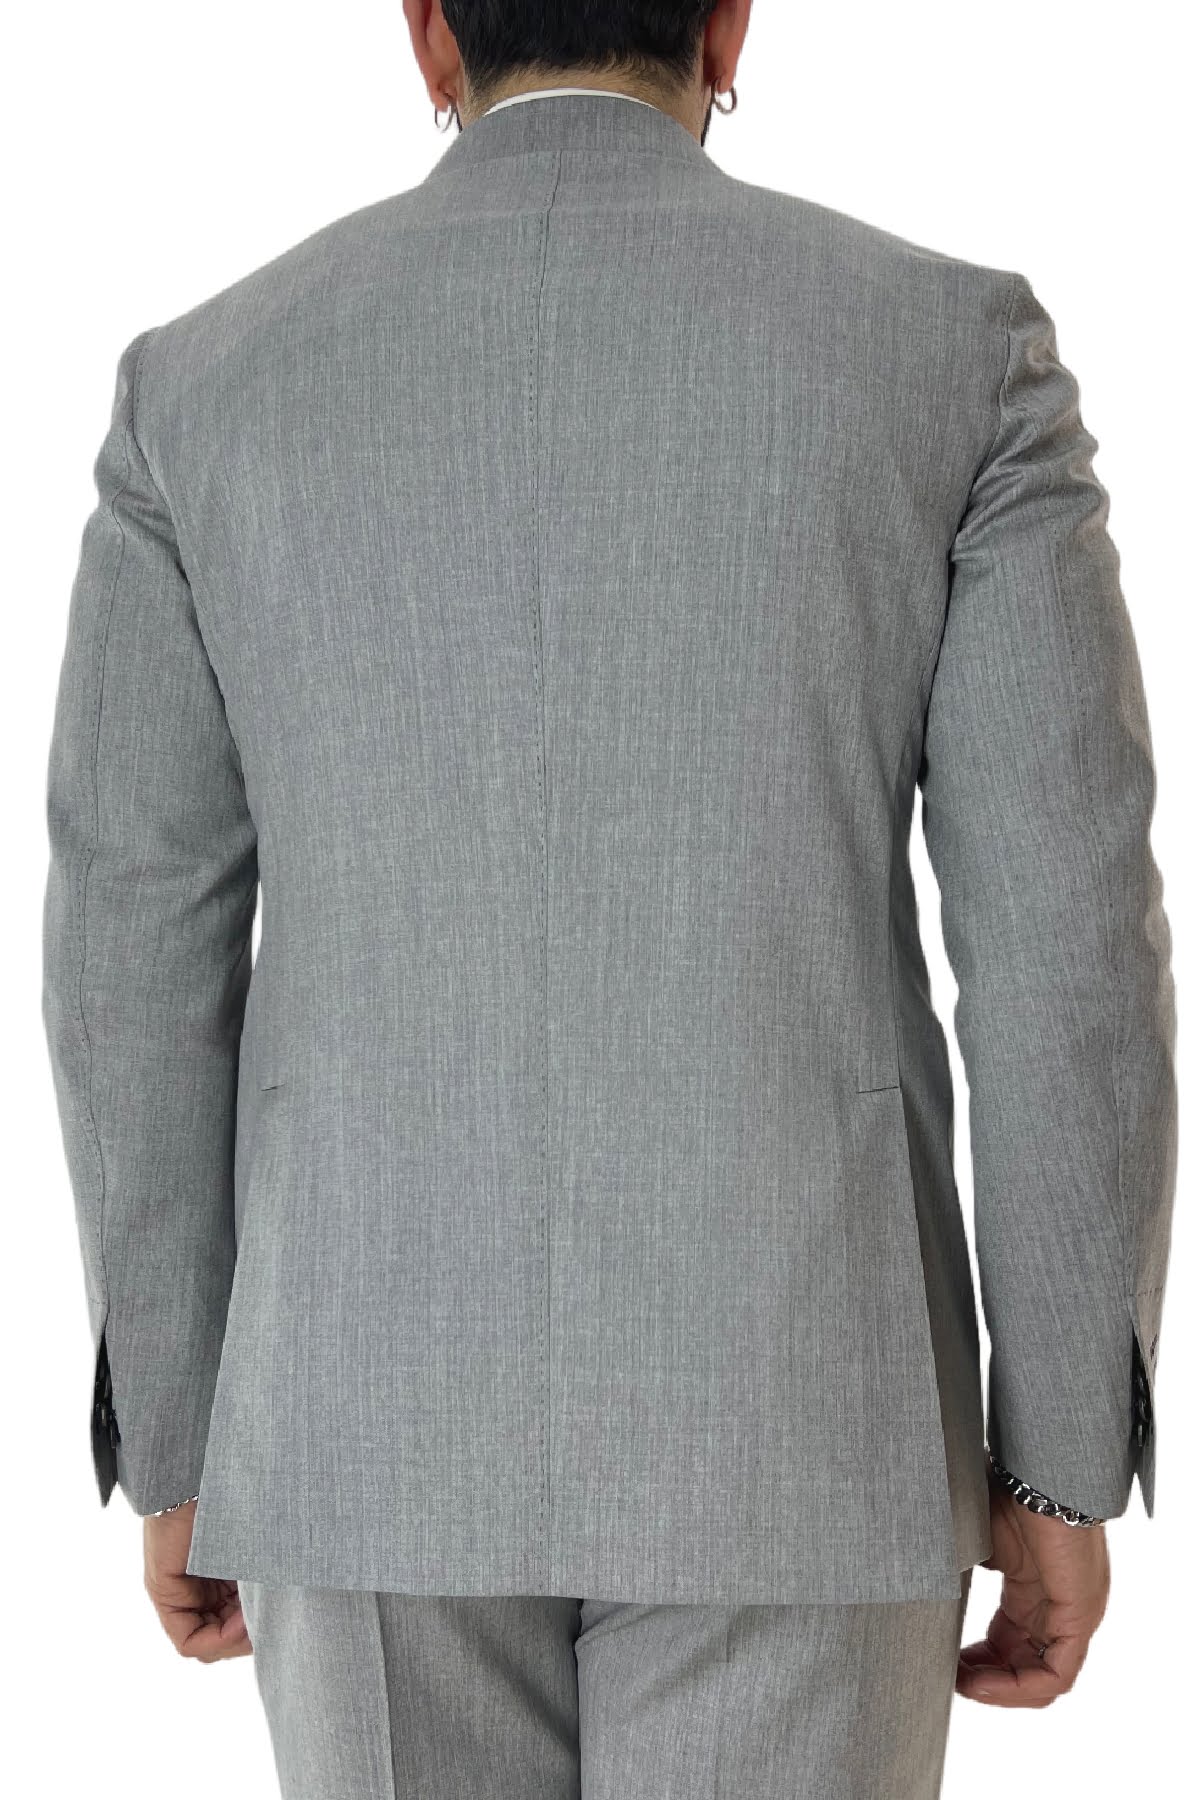 Abito uomo doppiopetto grigio chiaro in fresco lana 100% Vitale Barberis con pantalone vita alta